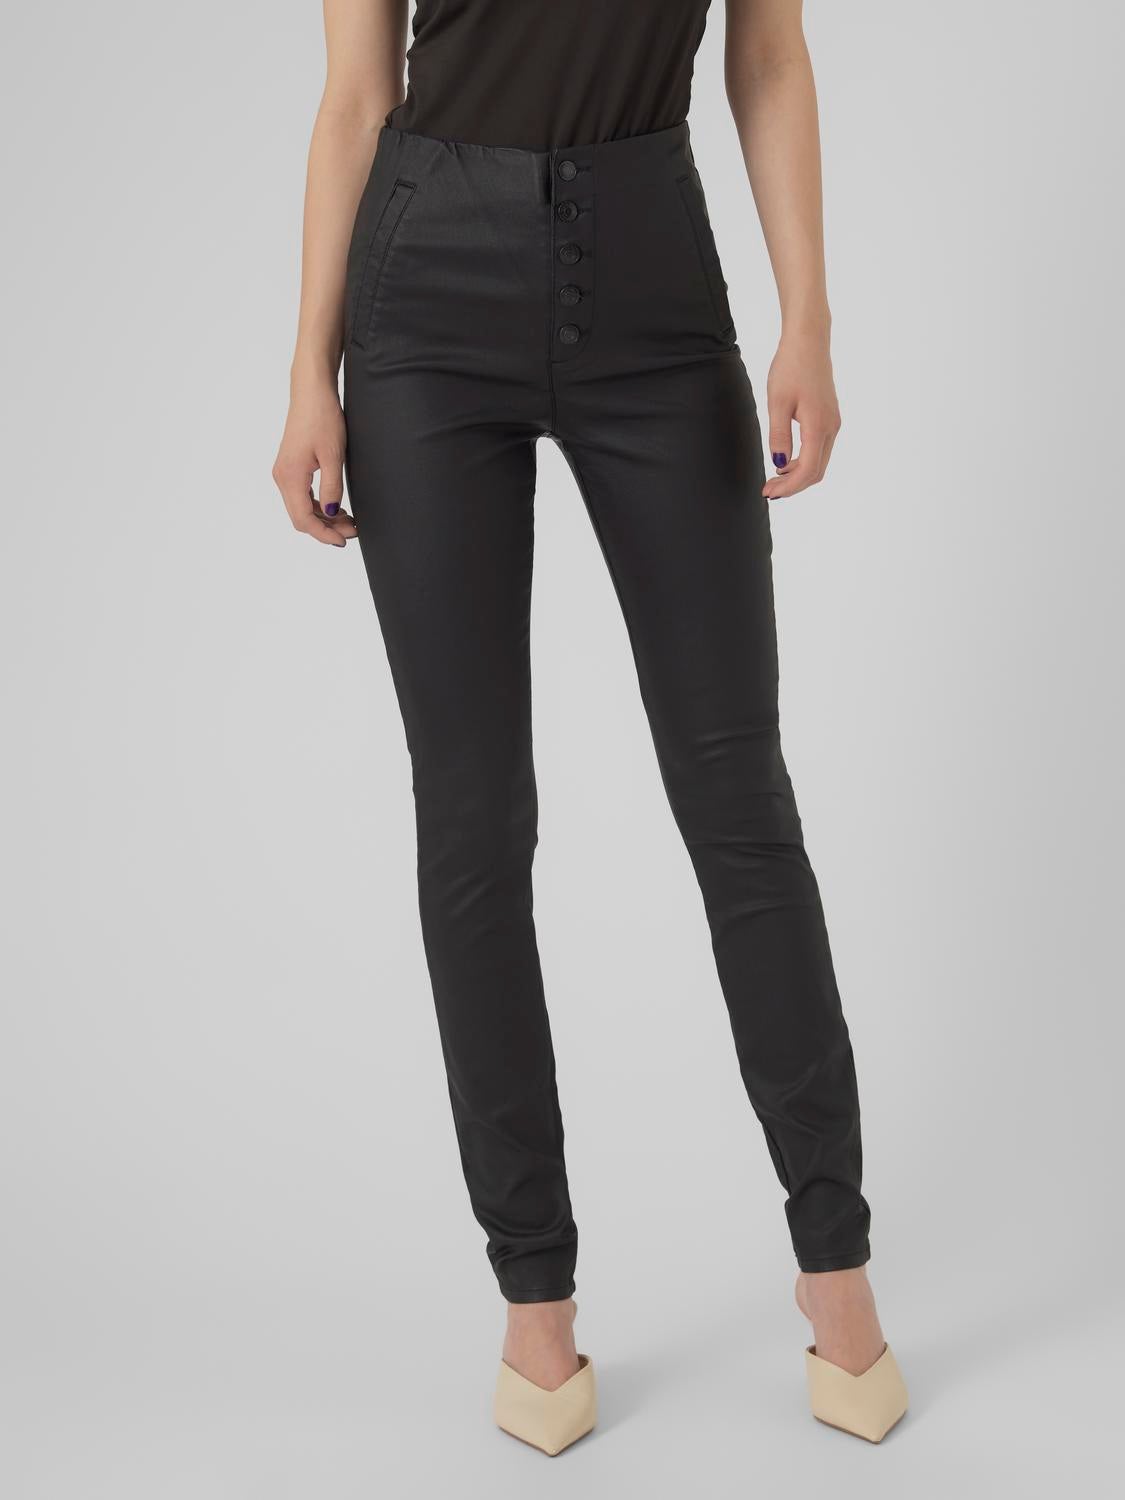 Openbaren Uitsluiting Maand Skinny Fit Jeans with 50% discount! | Vero Moda®